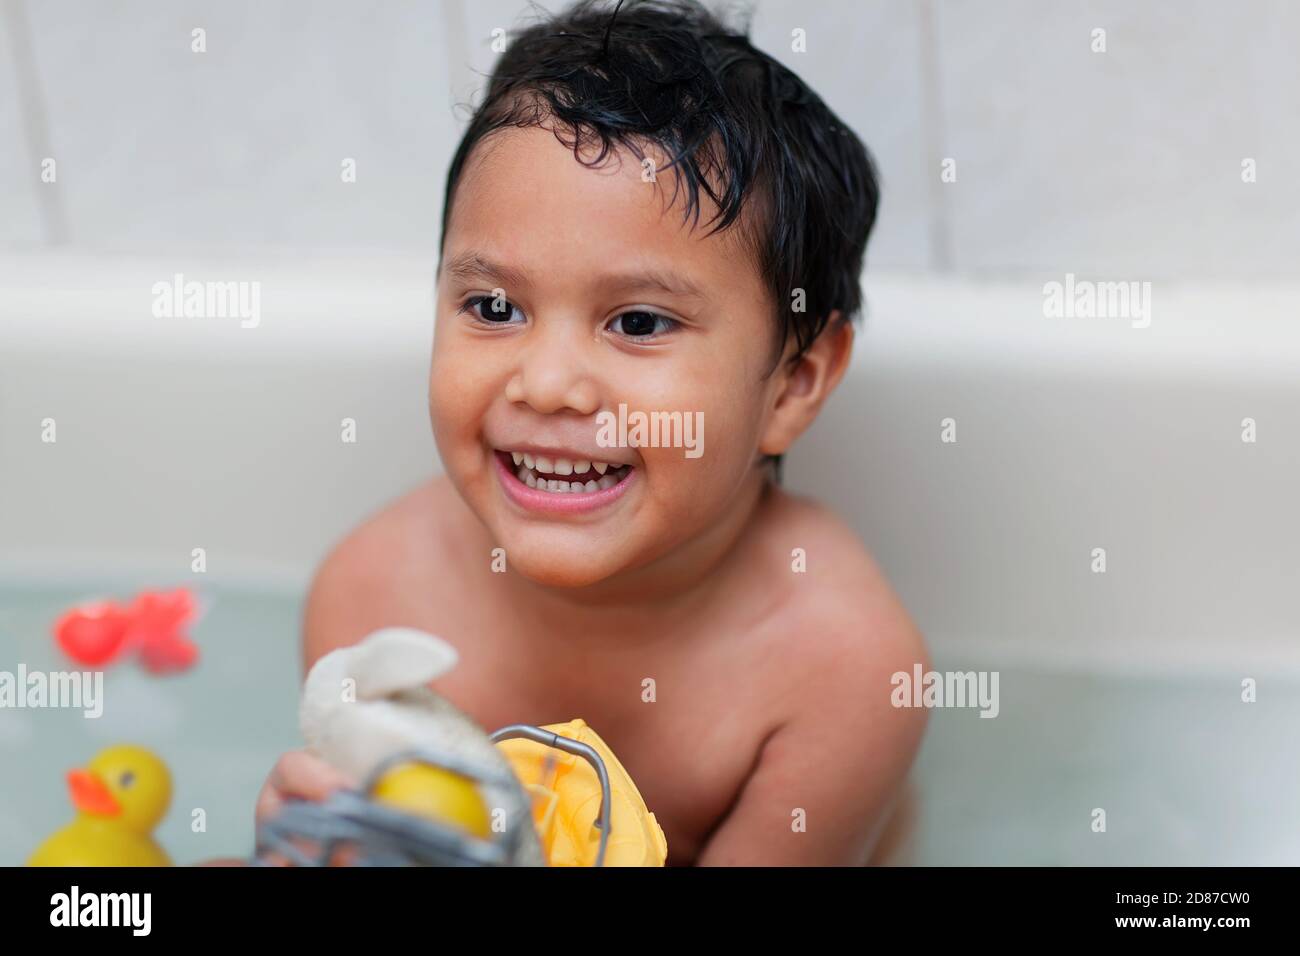 Un niño que se divierte y se ríe durante el baño y juega con los juguetes de baño para niños pequeños. Foto de stock